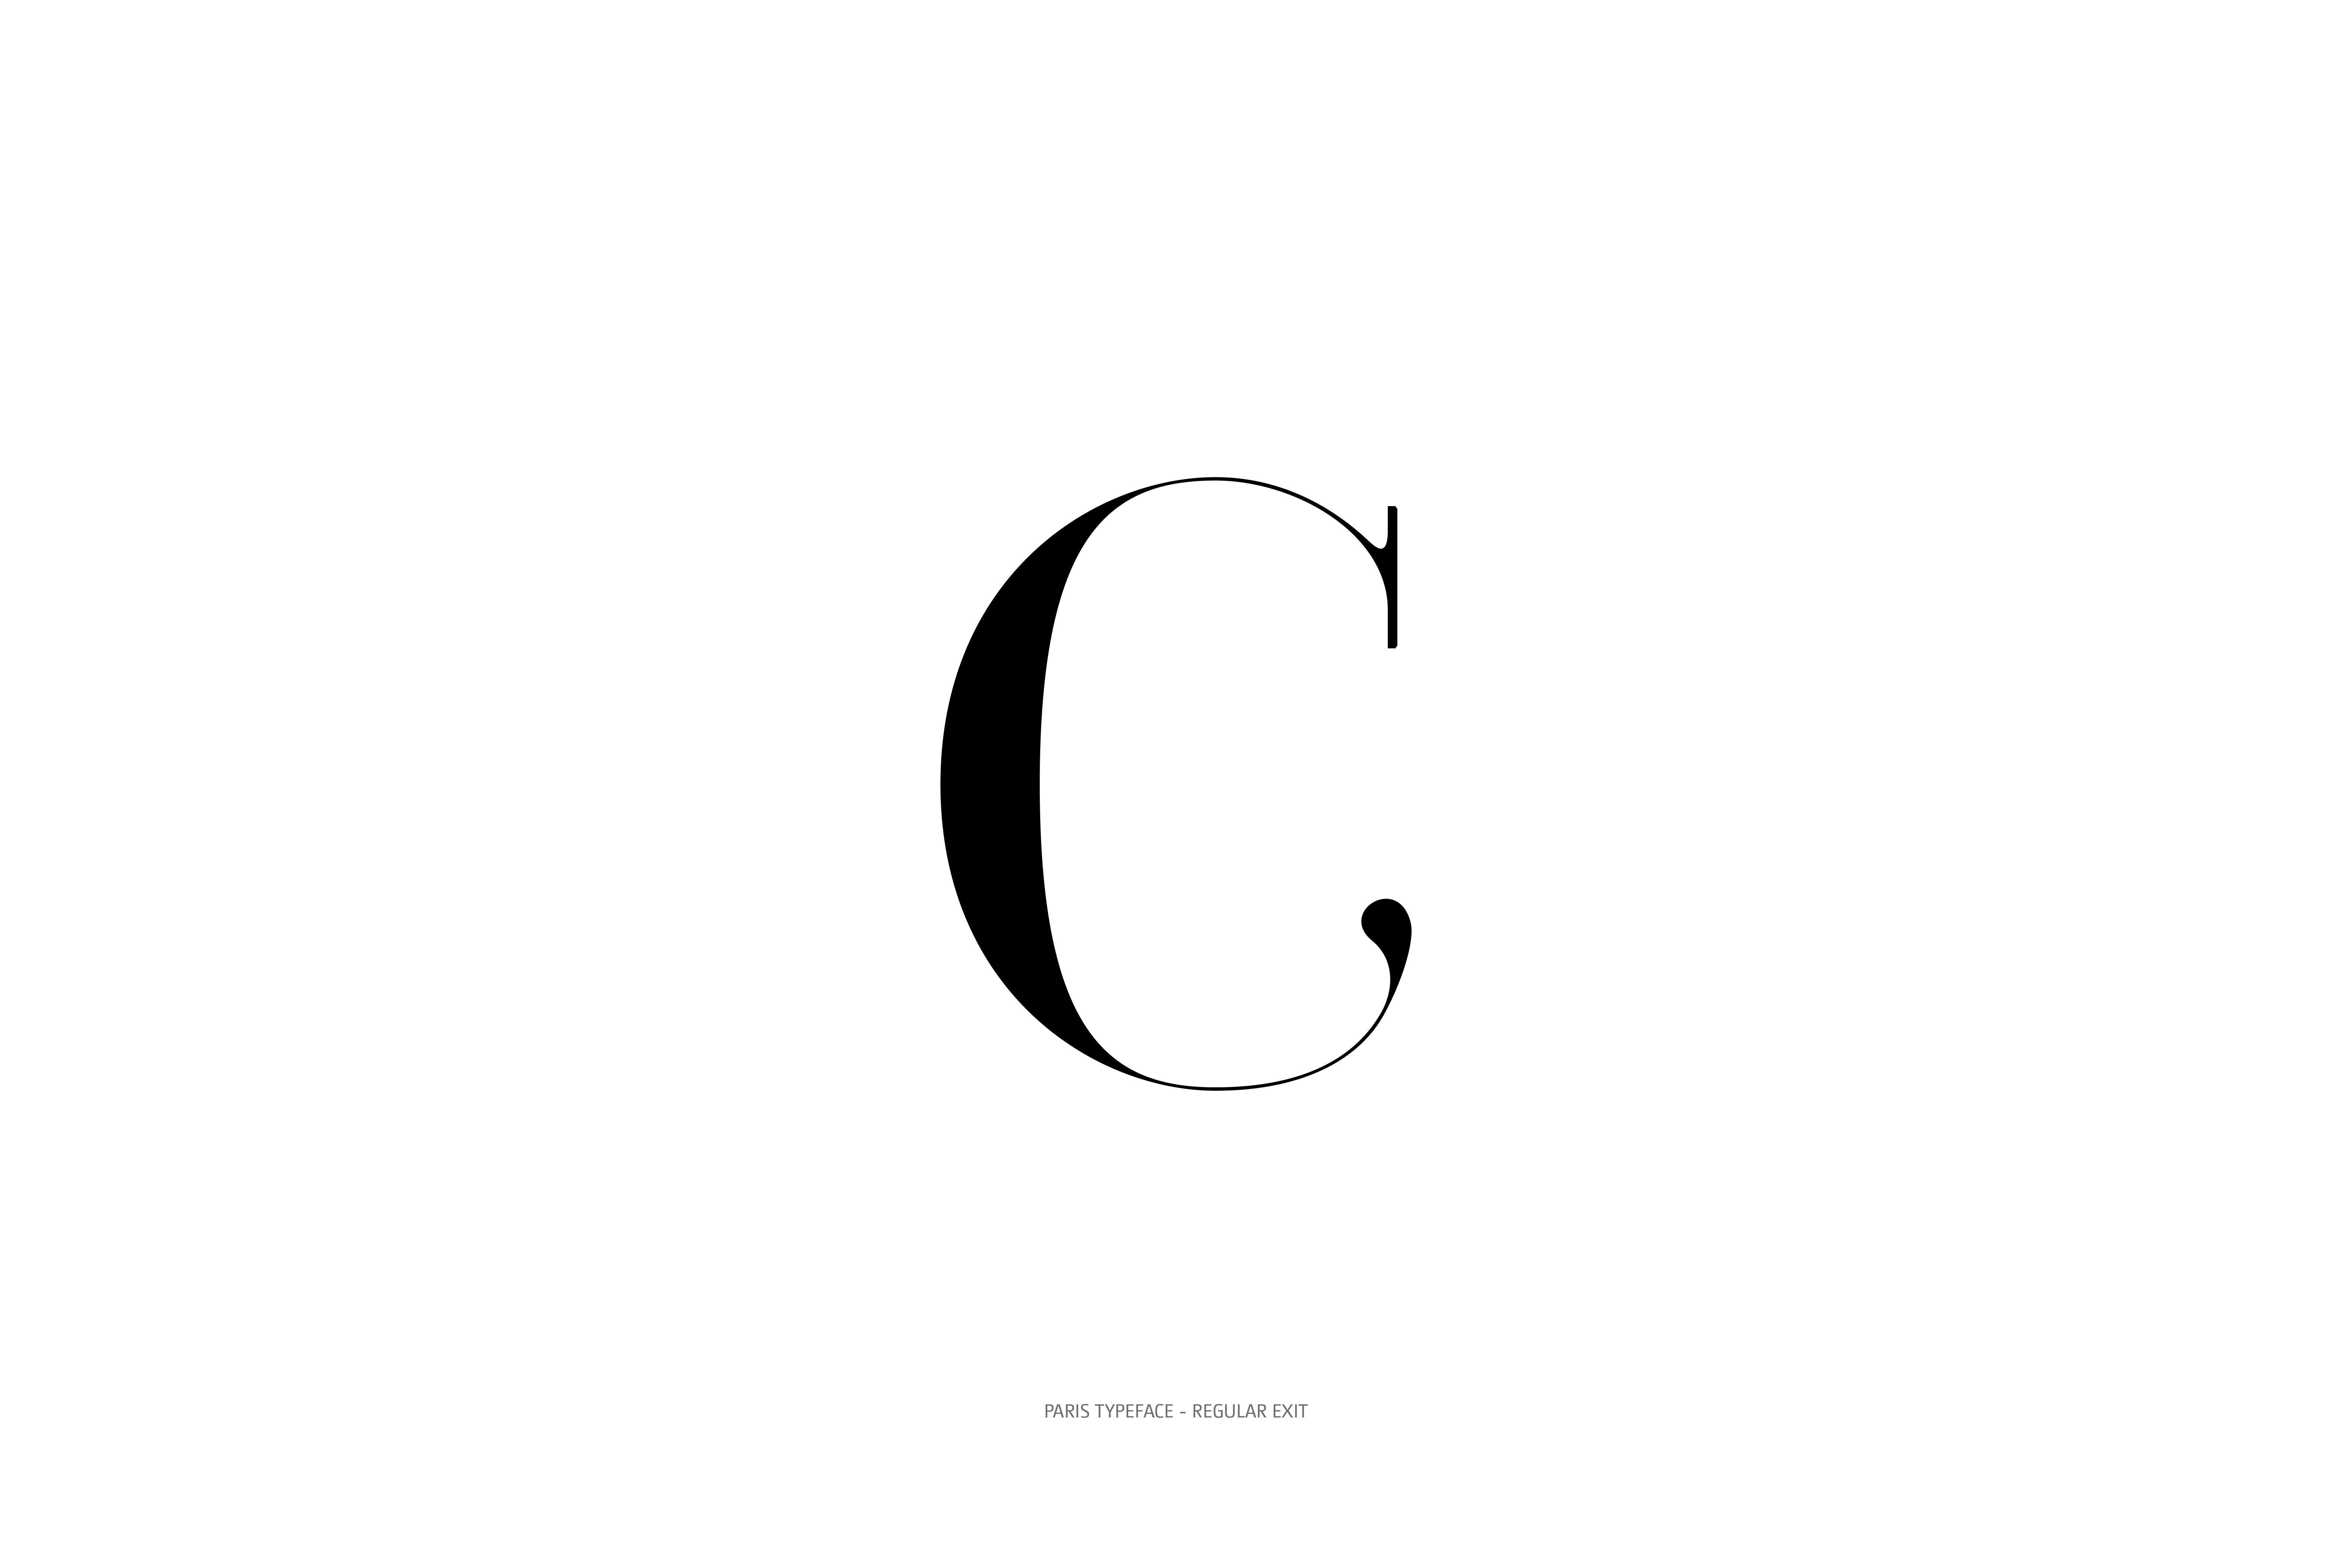 Paris Typeface Regular Exit C